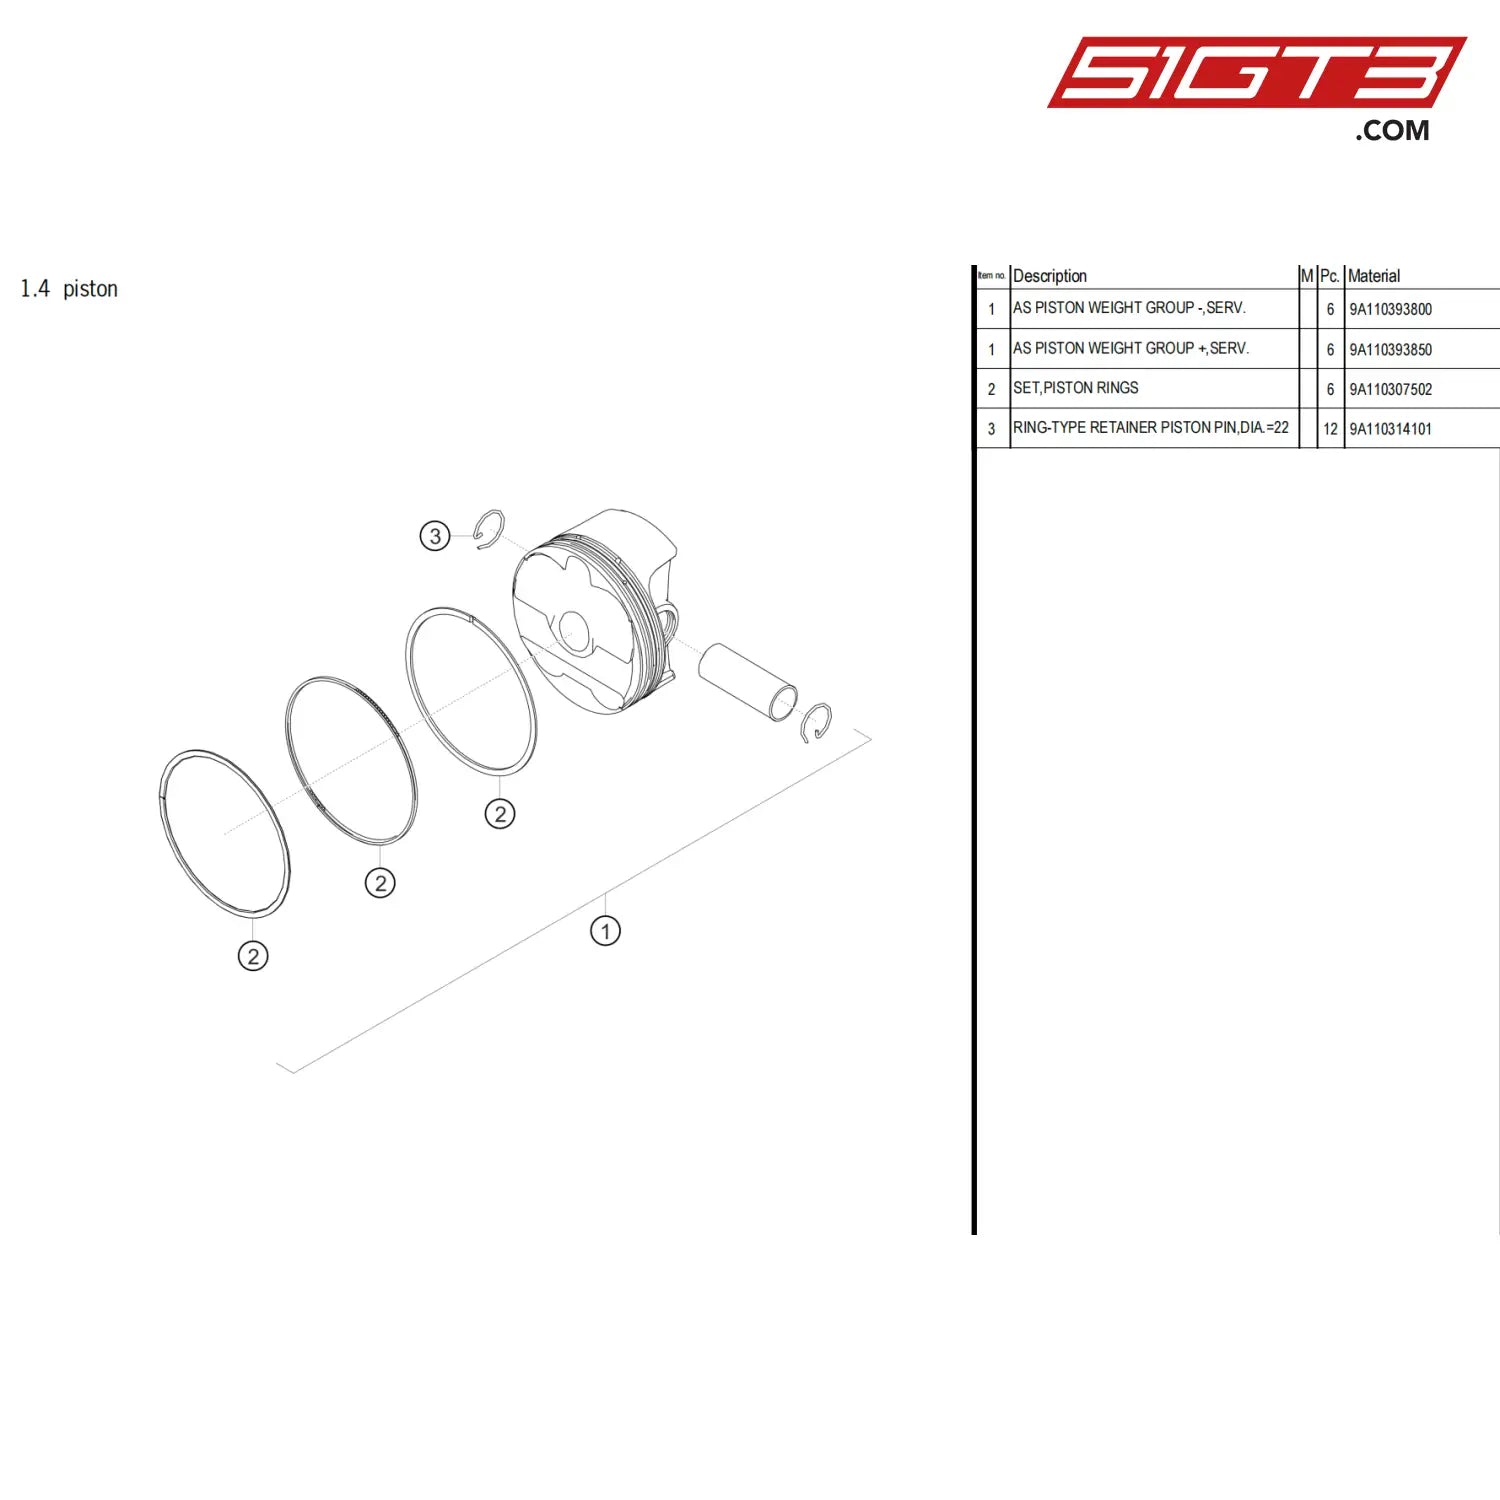 Set Piston Rings - 9A110307502 [Porsche 718 Cayman Gt4 Clubsport] Piston